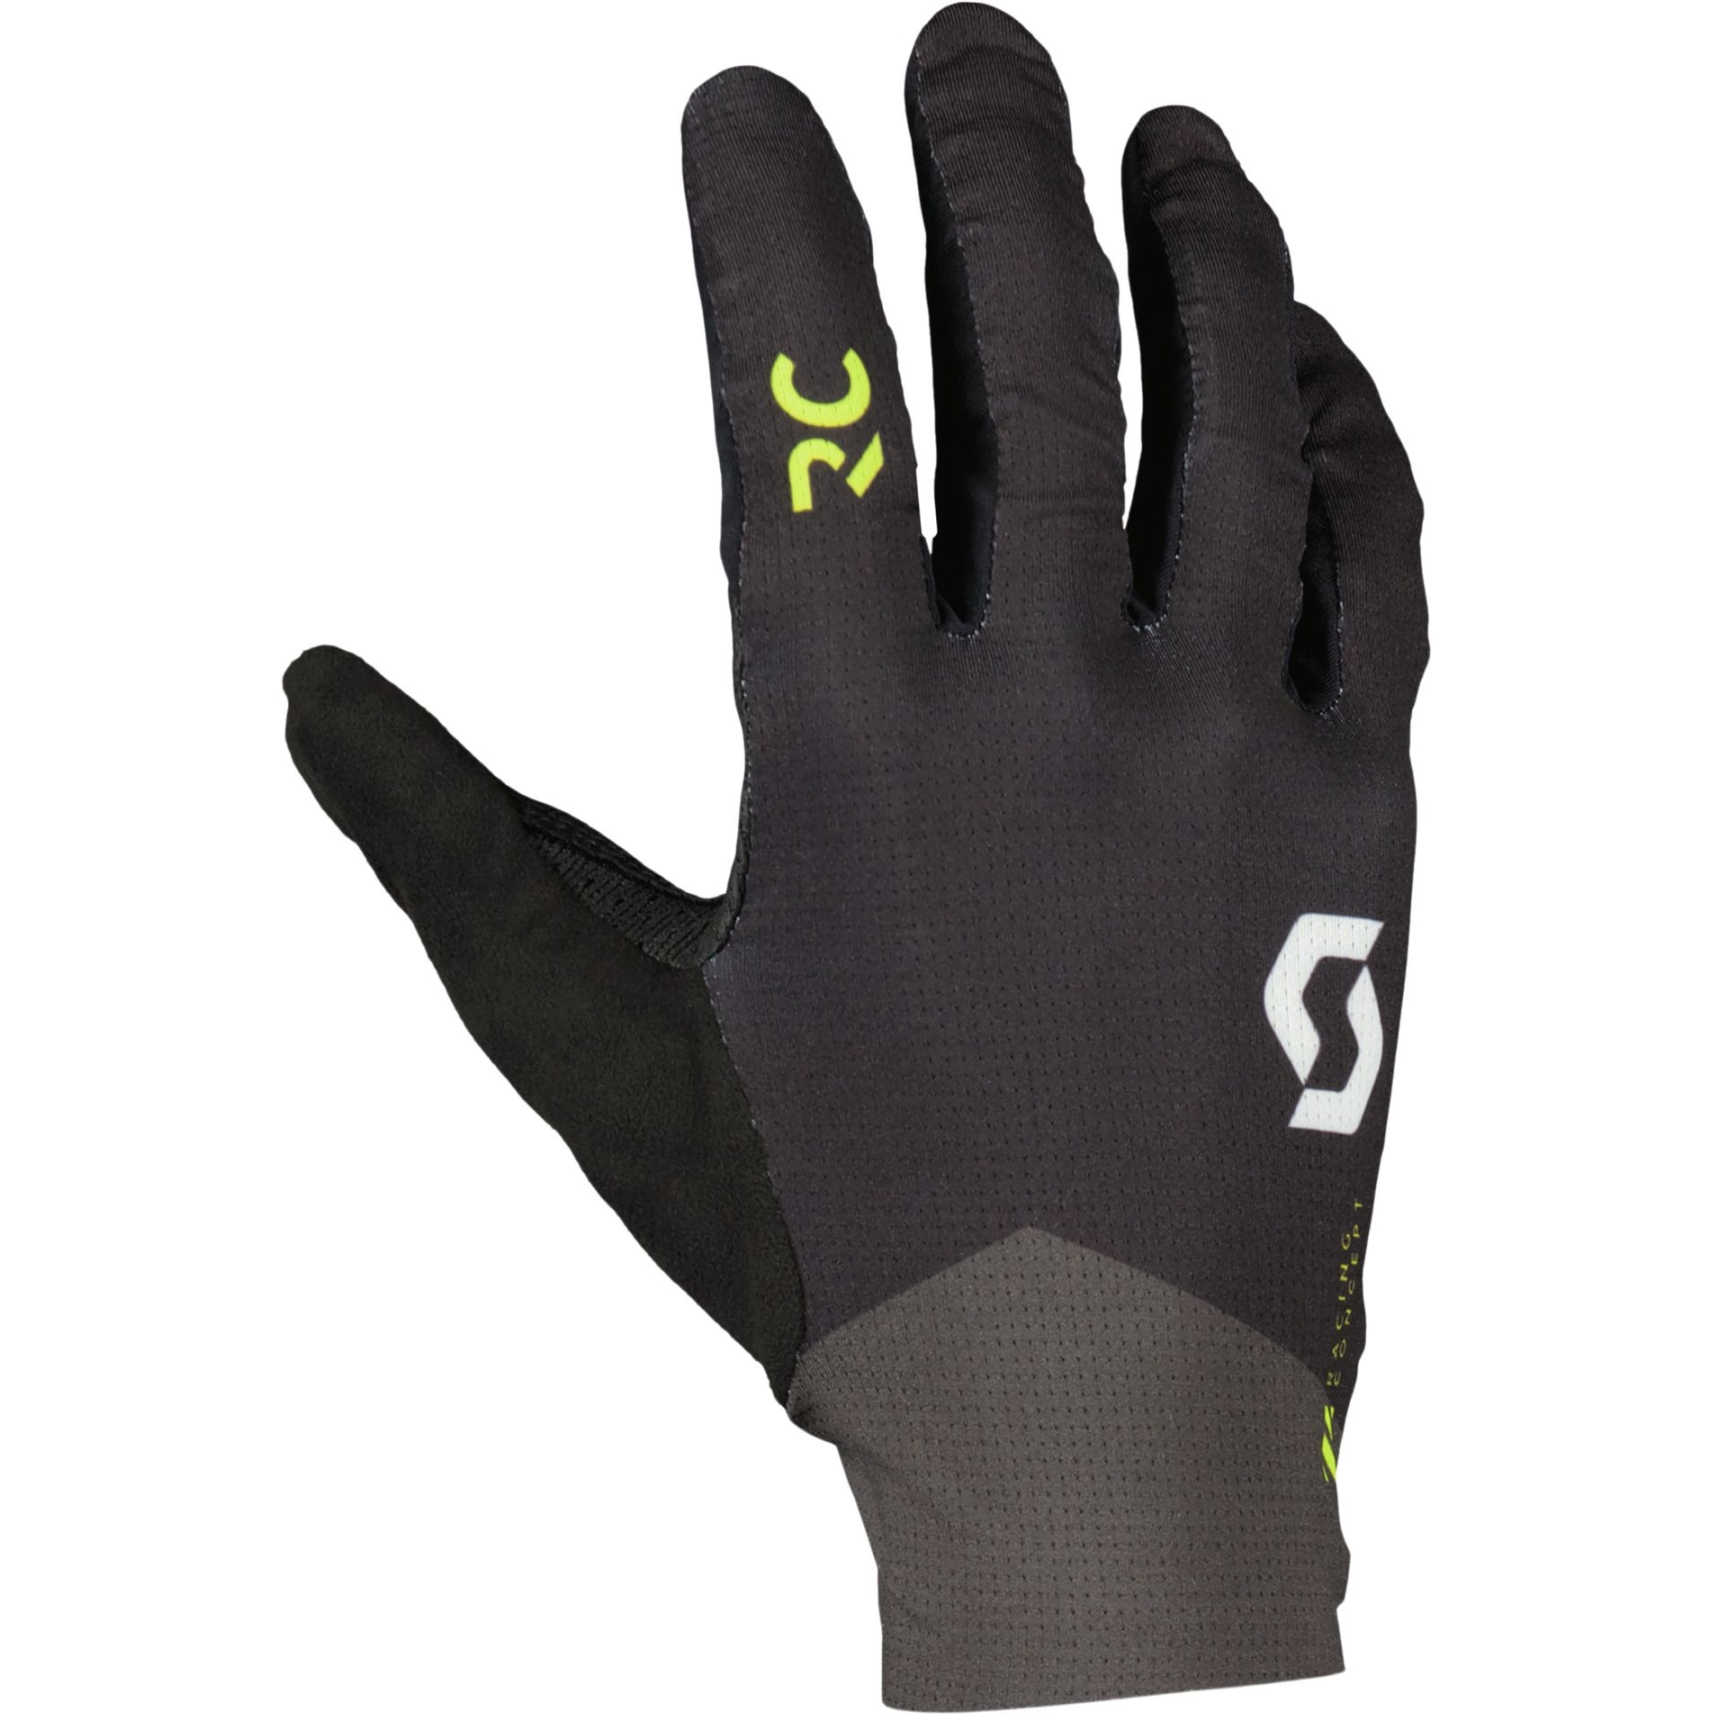 Produktbild von SCOTT RC SCOTT-SRAM LF Handschuhe - schwarz/gelb